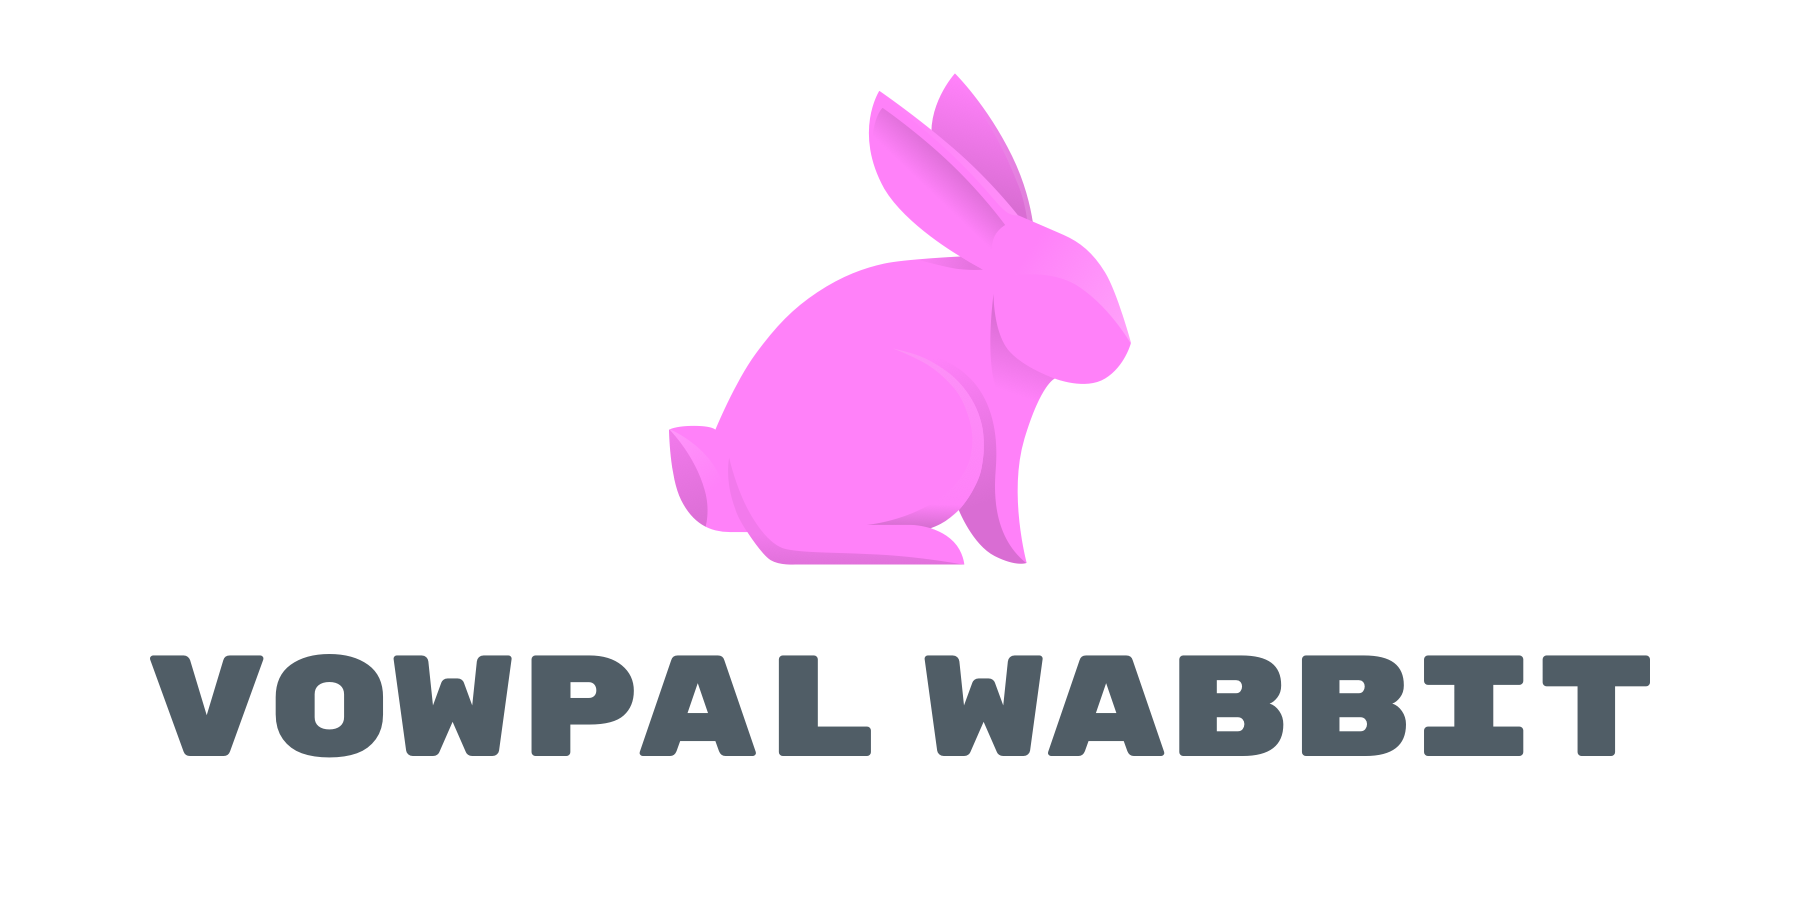 Vowpal Wabbit